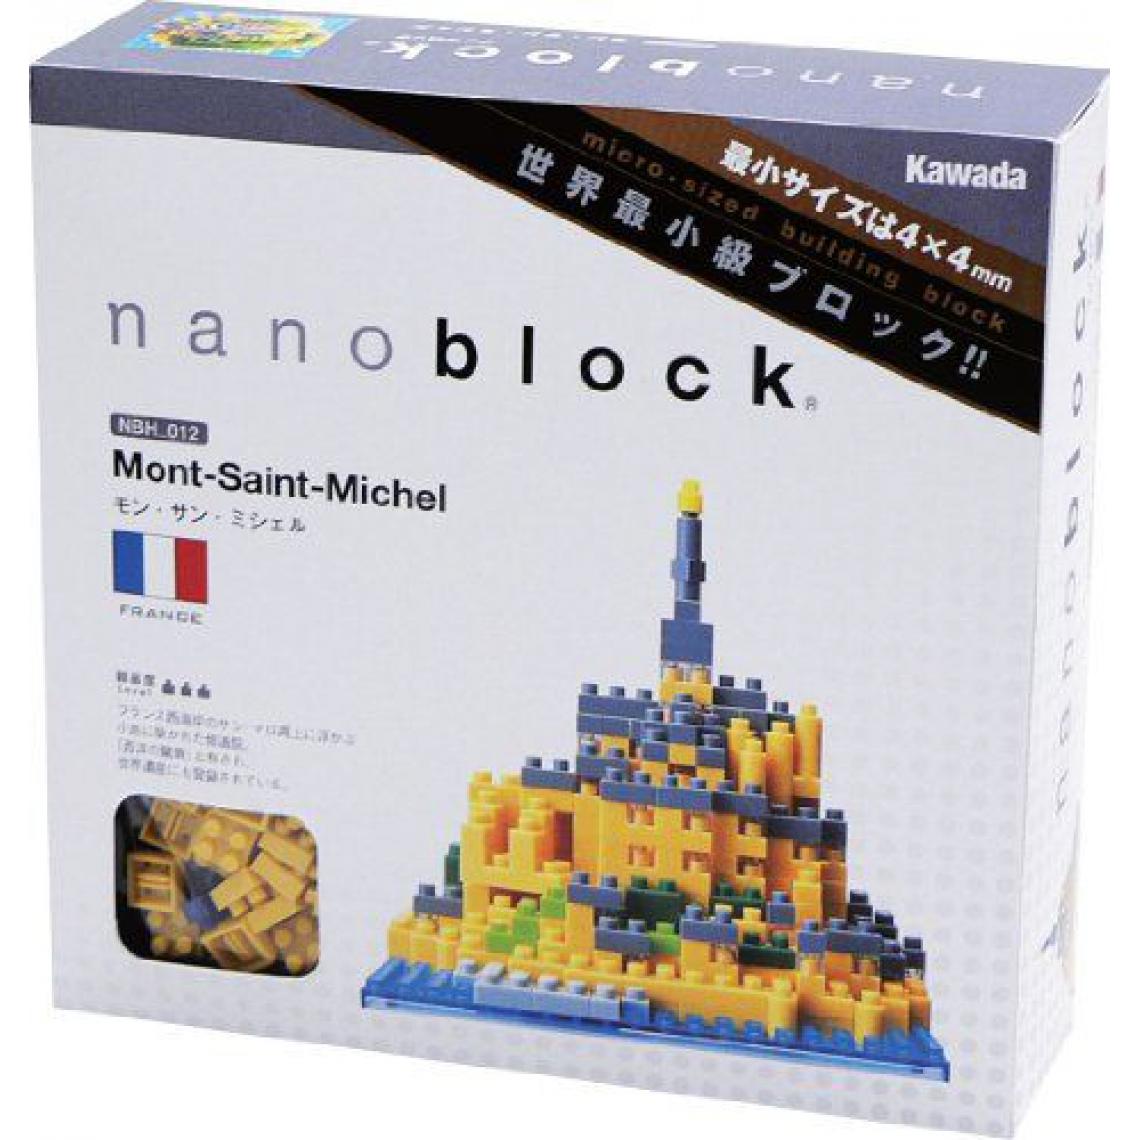 Inconnu - Nanoblock - Nbh-012 - Jeu De Construction - Mont-Saint-Michel - Briques et blocs